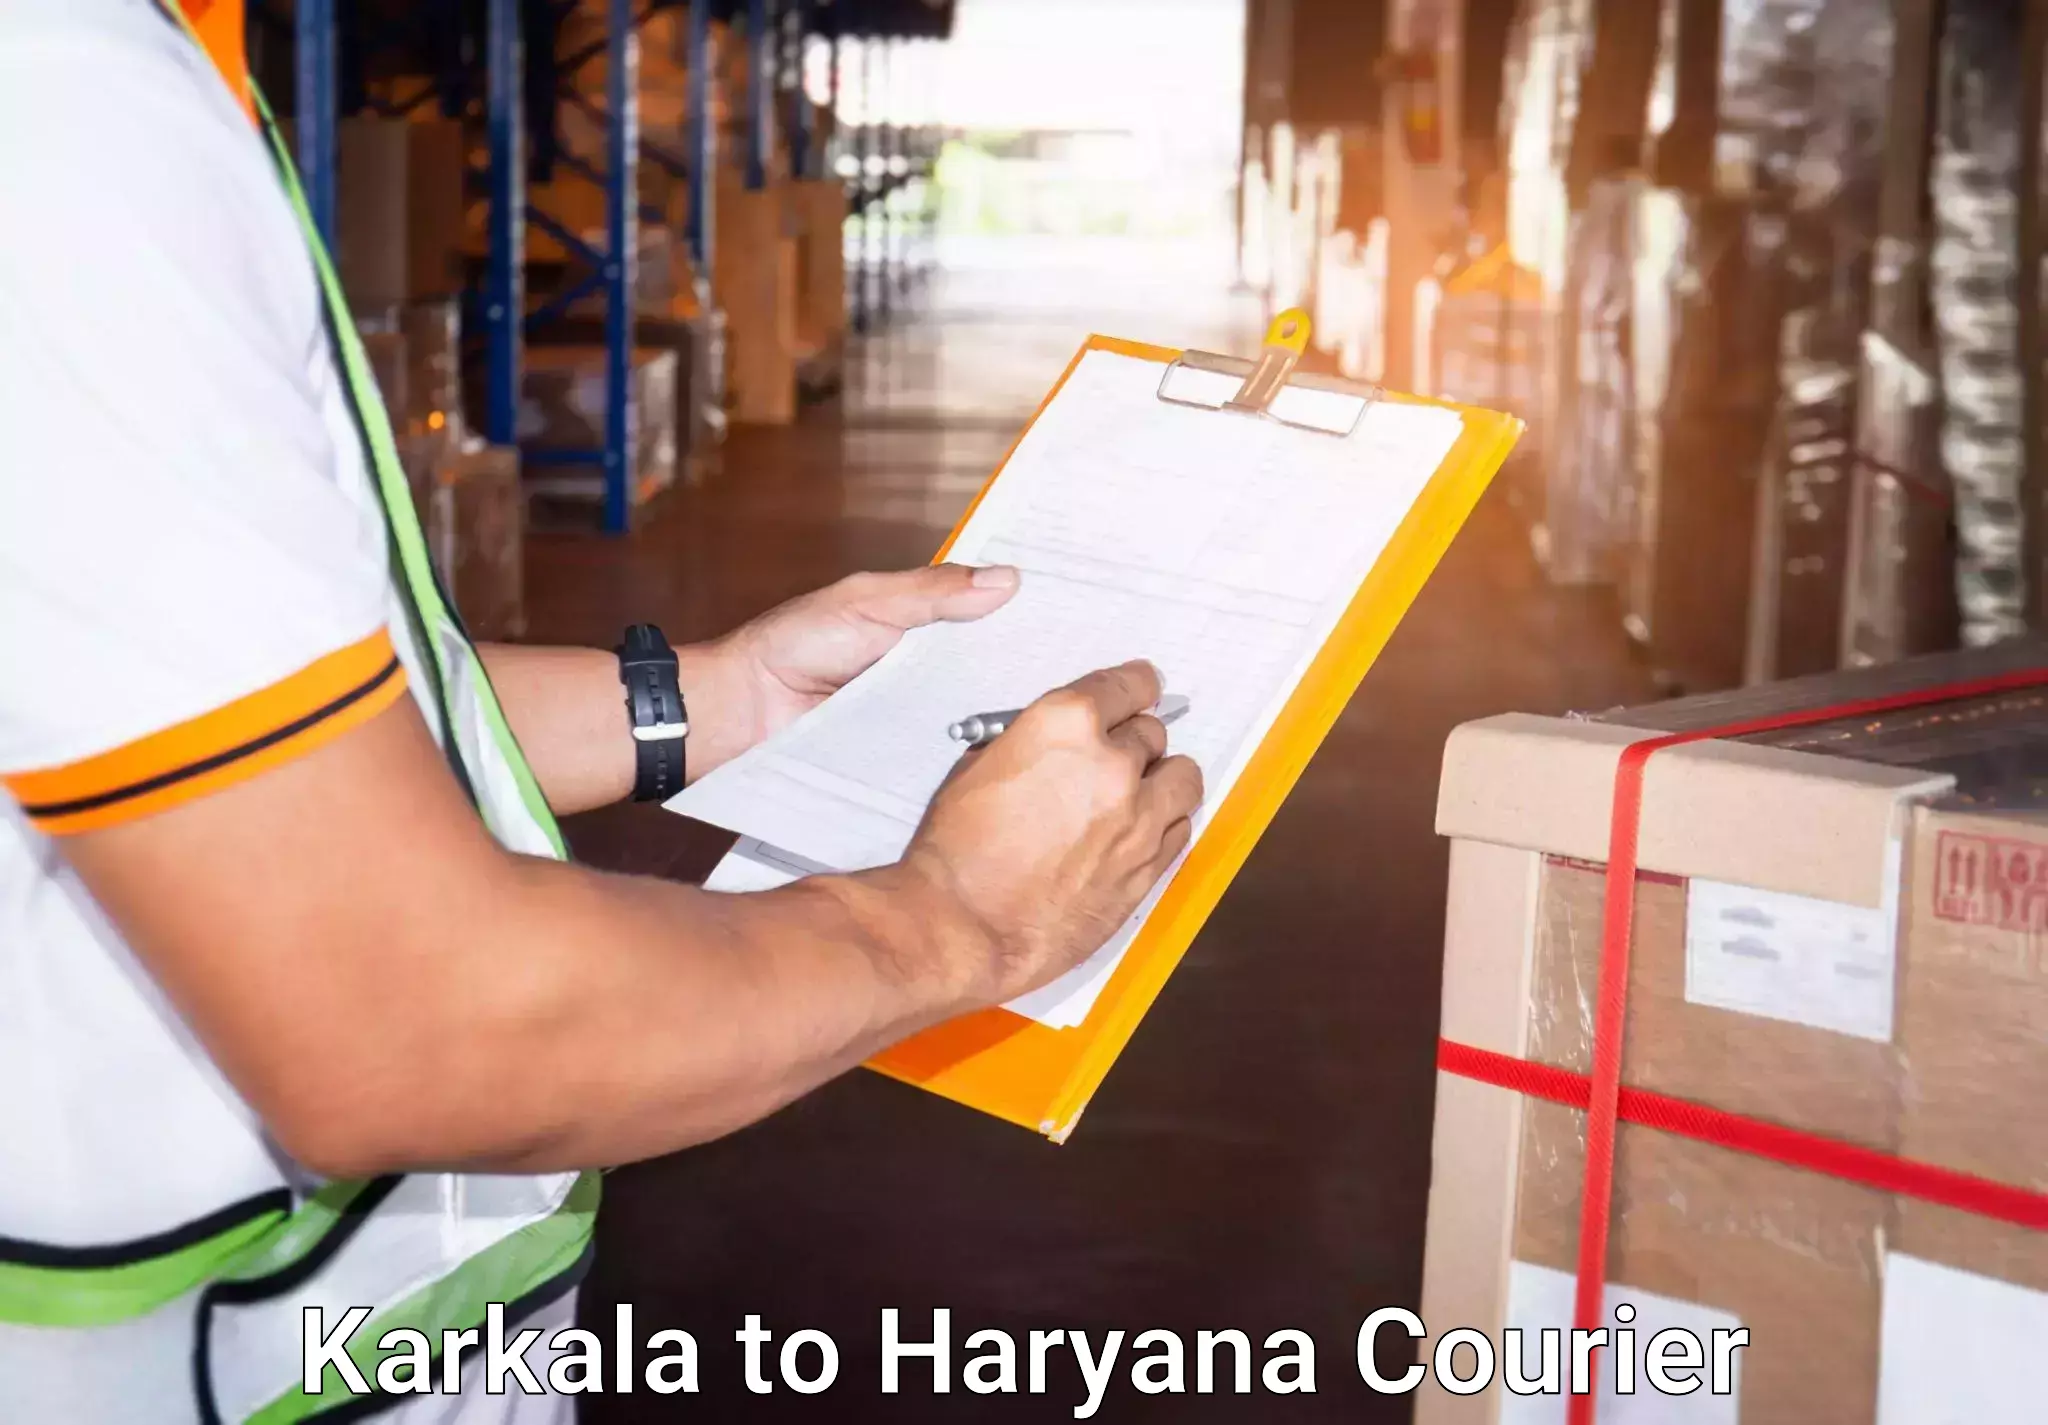 Hassle-free luggage shipping Karkala to IIIT Sonepat